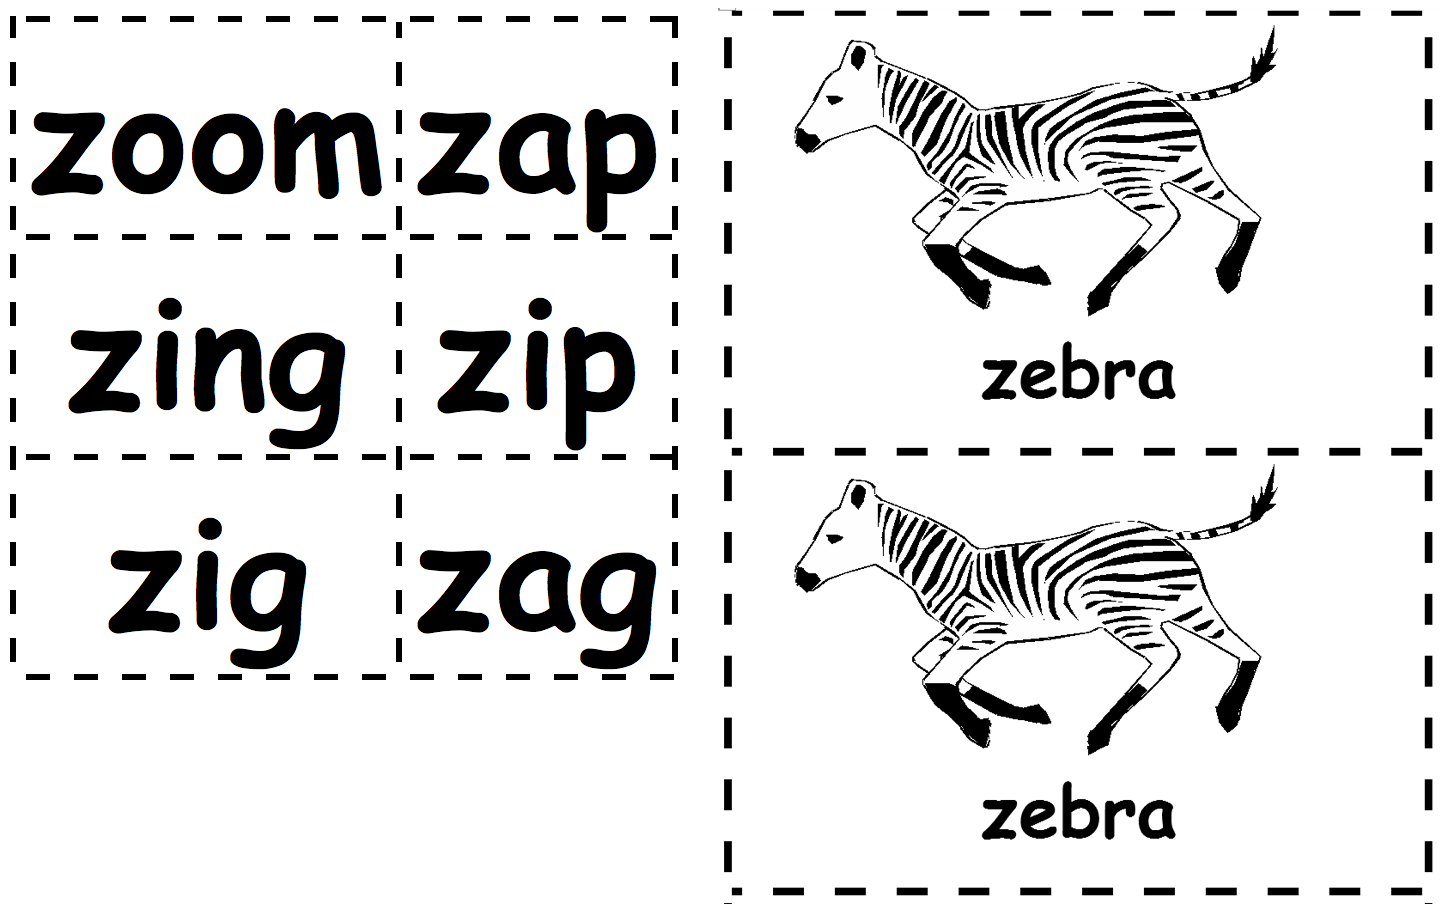 Zebra-zoom